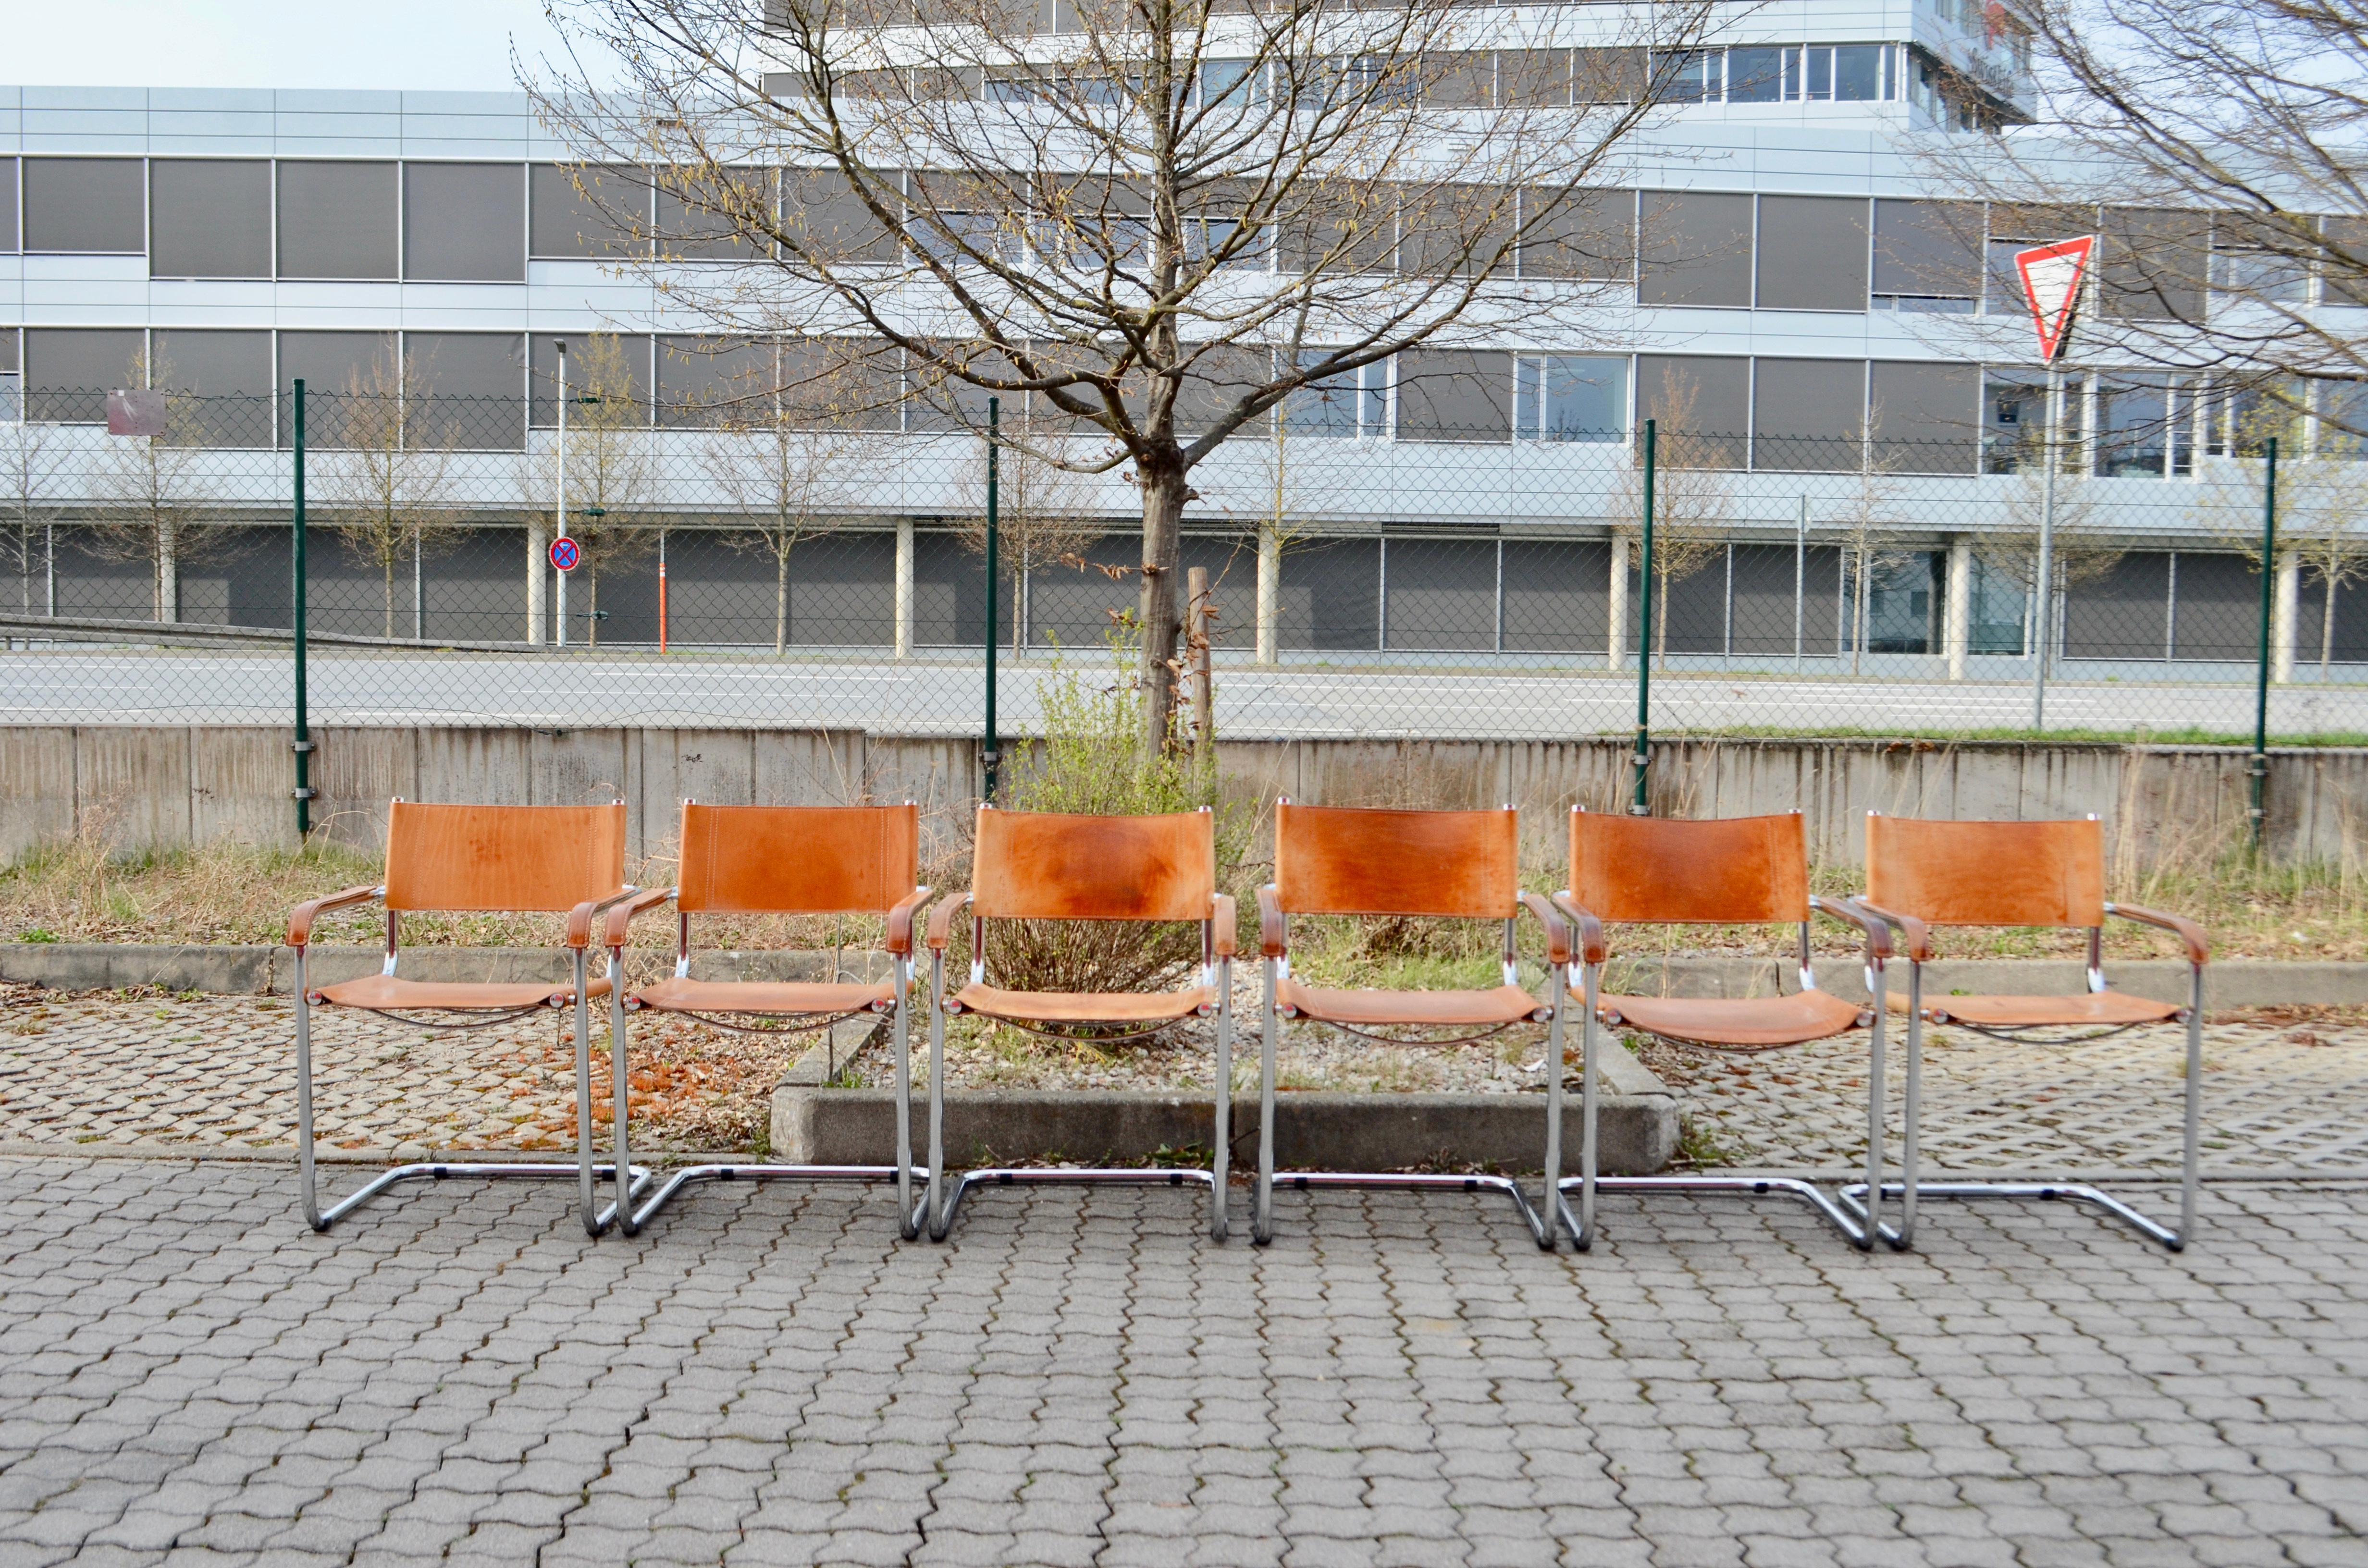 Ces chaises vintage Cantilever sont des classiques italiens.
À la manière de Marcel Breuer, ces chaises sont fortement inspirées du mouvement Bauhaus.
Il s'agit d'un cuir épais de selle à tannage végétal qui a développé au fil des ans une